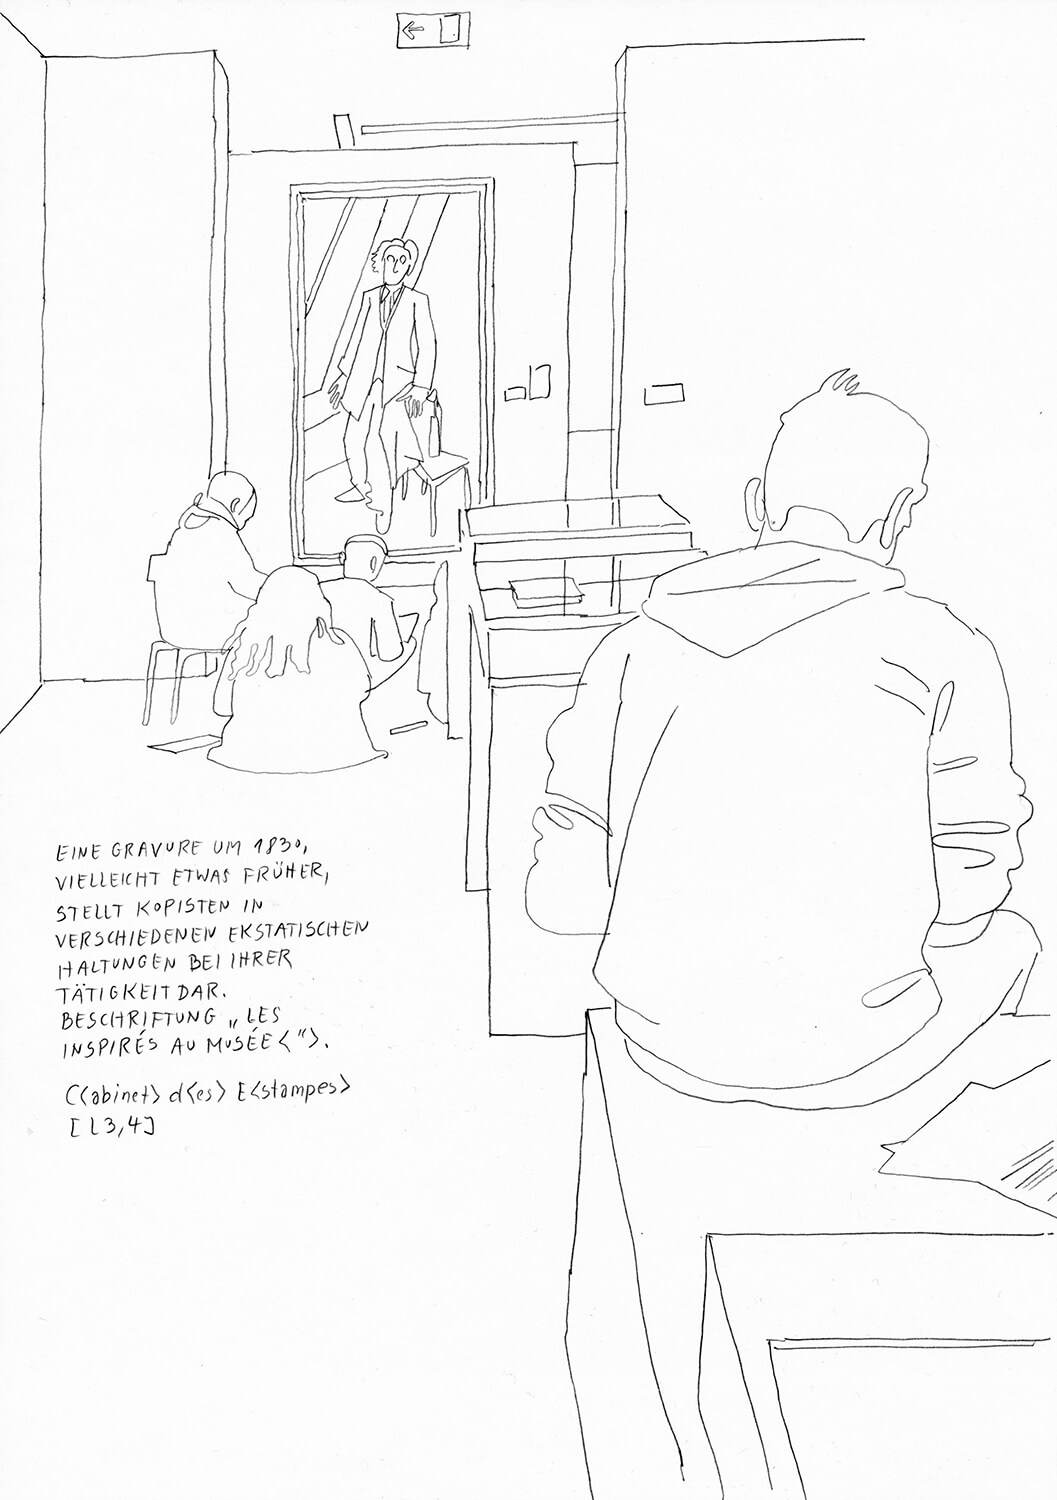 Matthias Beckmann, Passagen-Werk (106), 2019/2020, pencil on paper, 29.7 x 21 cm